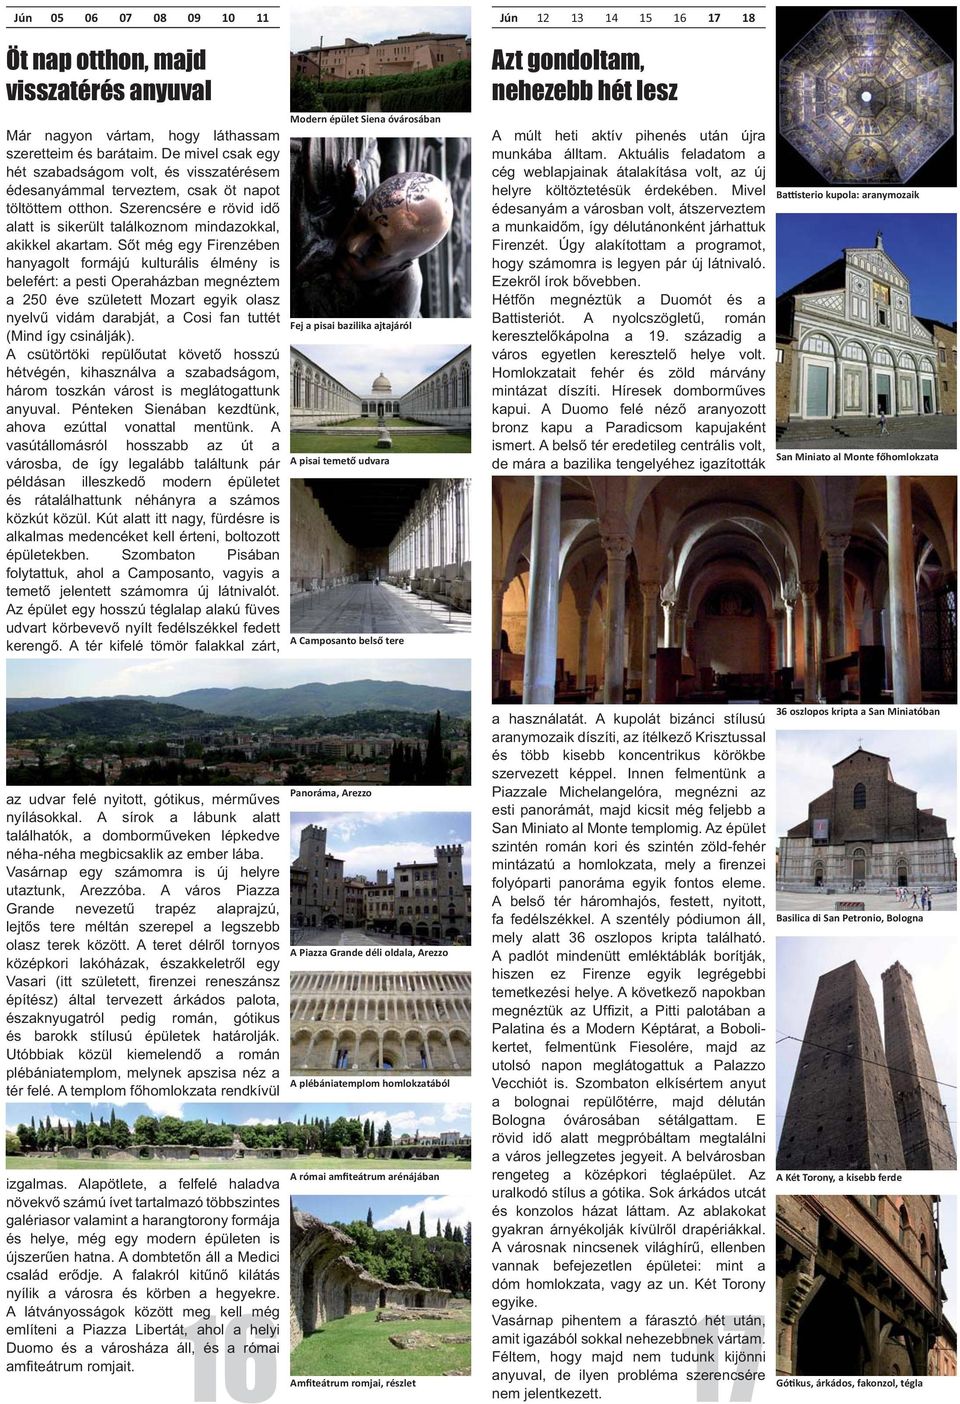 Arezzo A plébániatemplom homlokzatából 36 oszlopos kripta a San Miniatóban szervezett képpel.